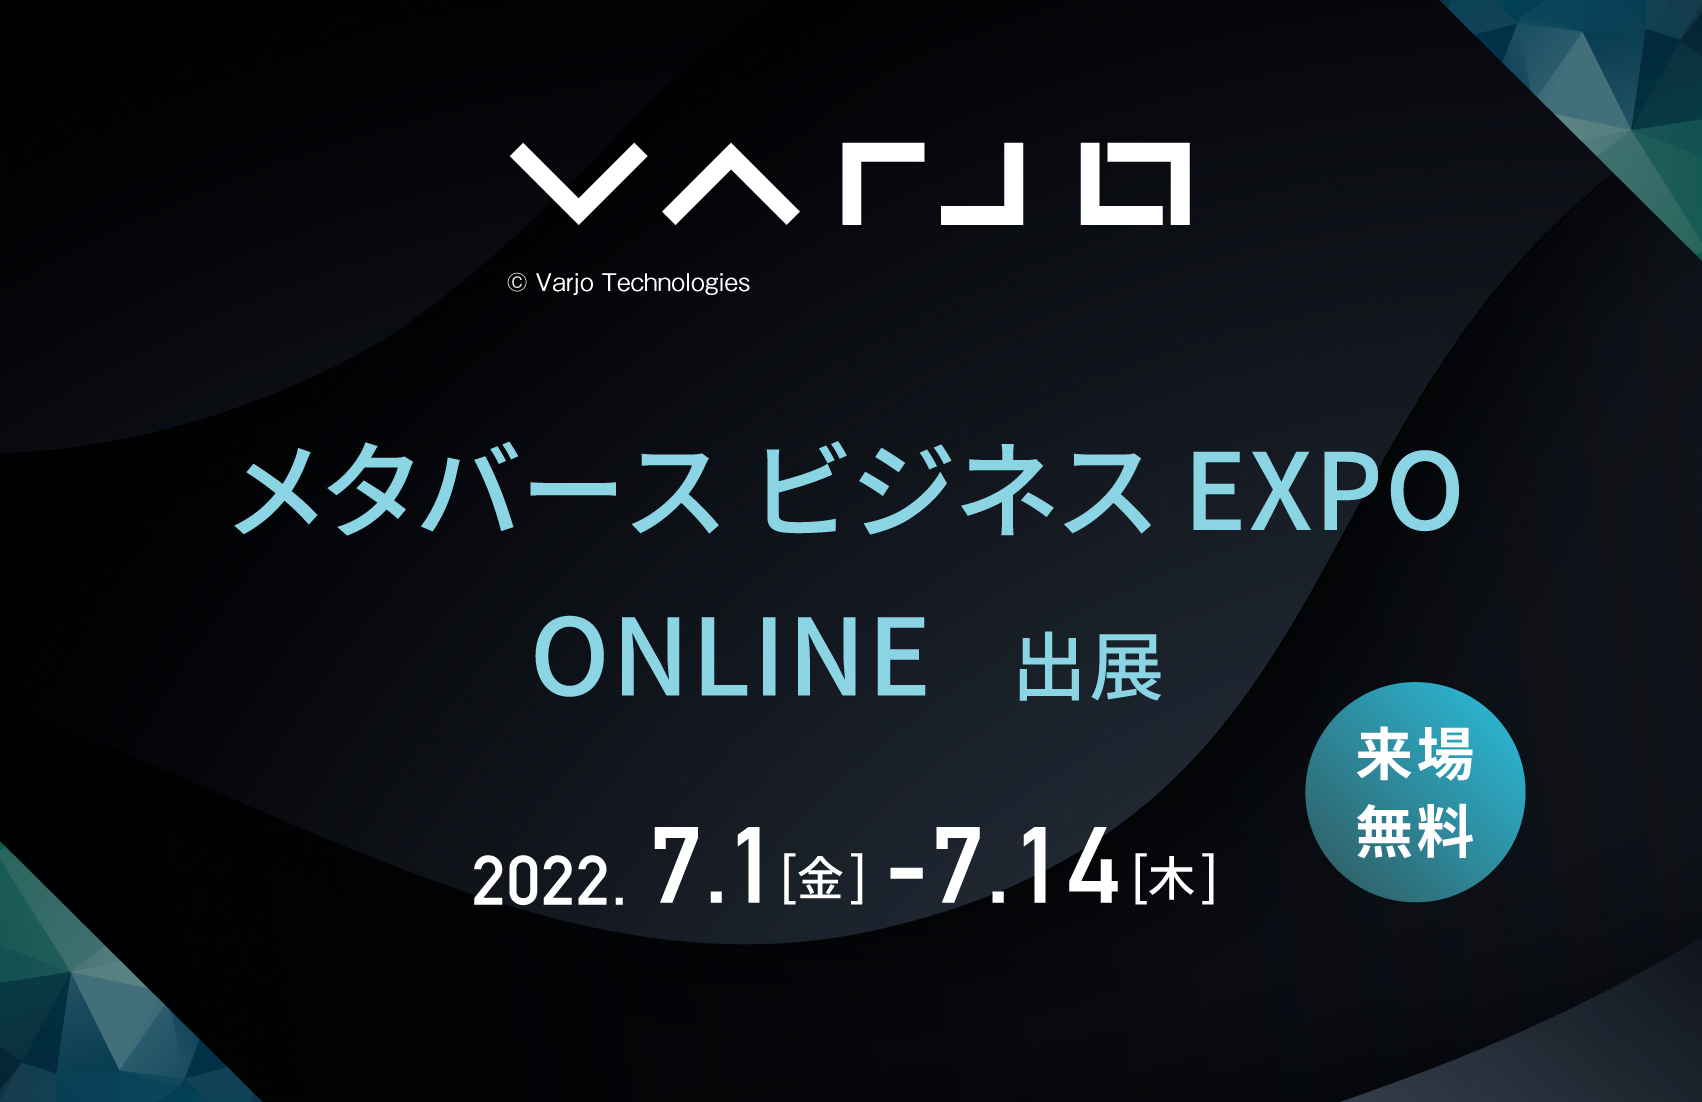  Varjo XR-3を「メタバース ビジネスEXPO ONLINE」に出展いたします